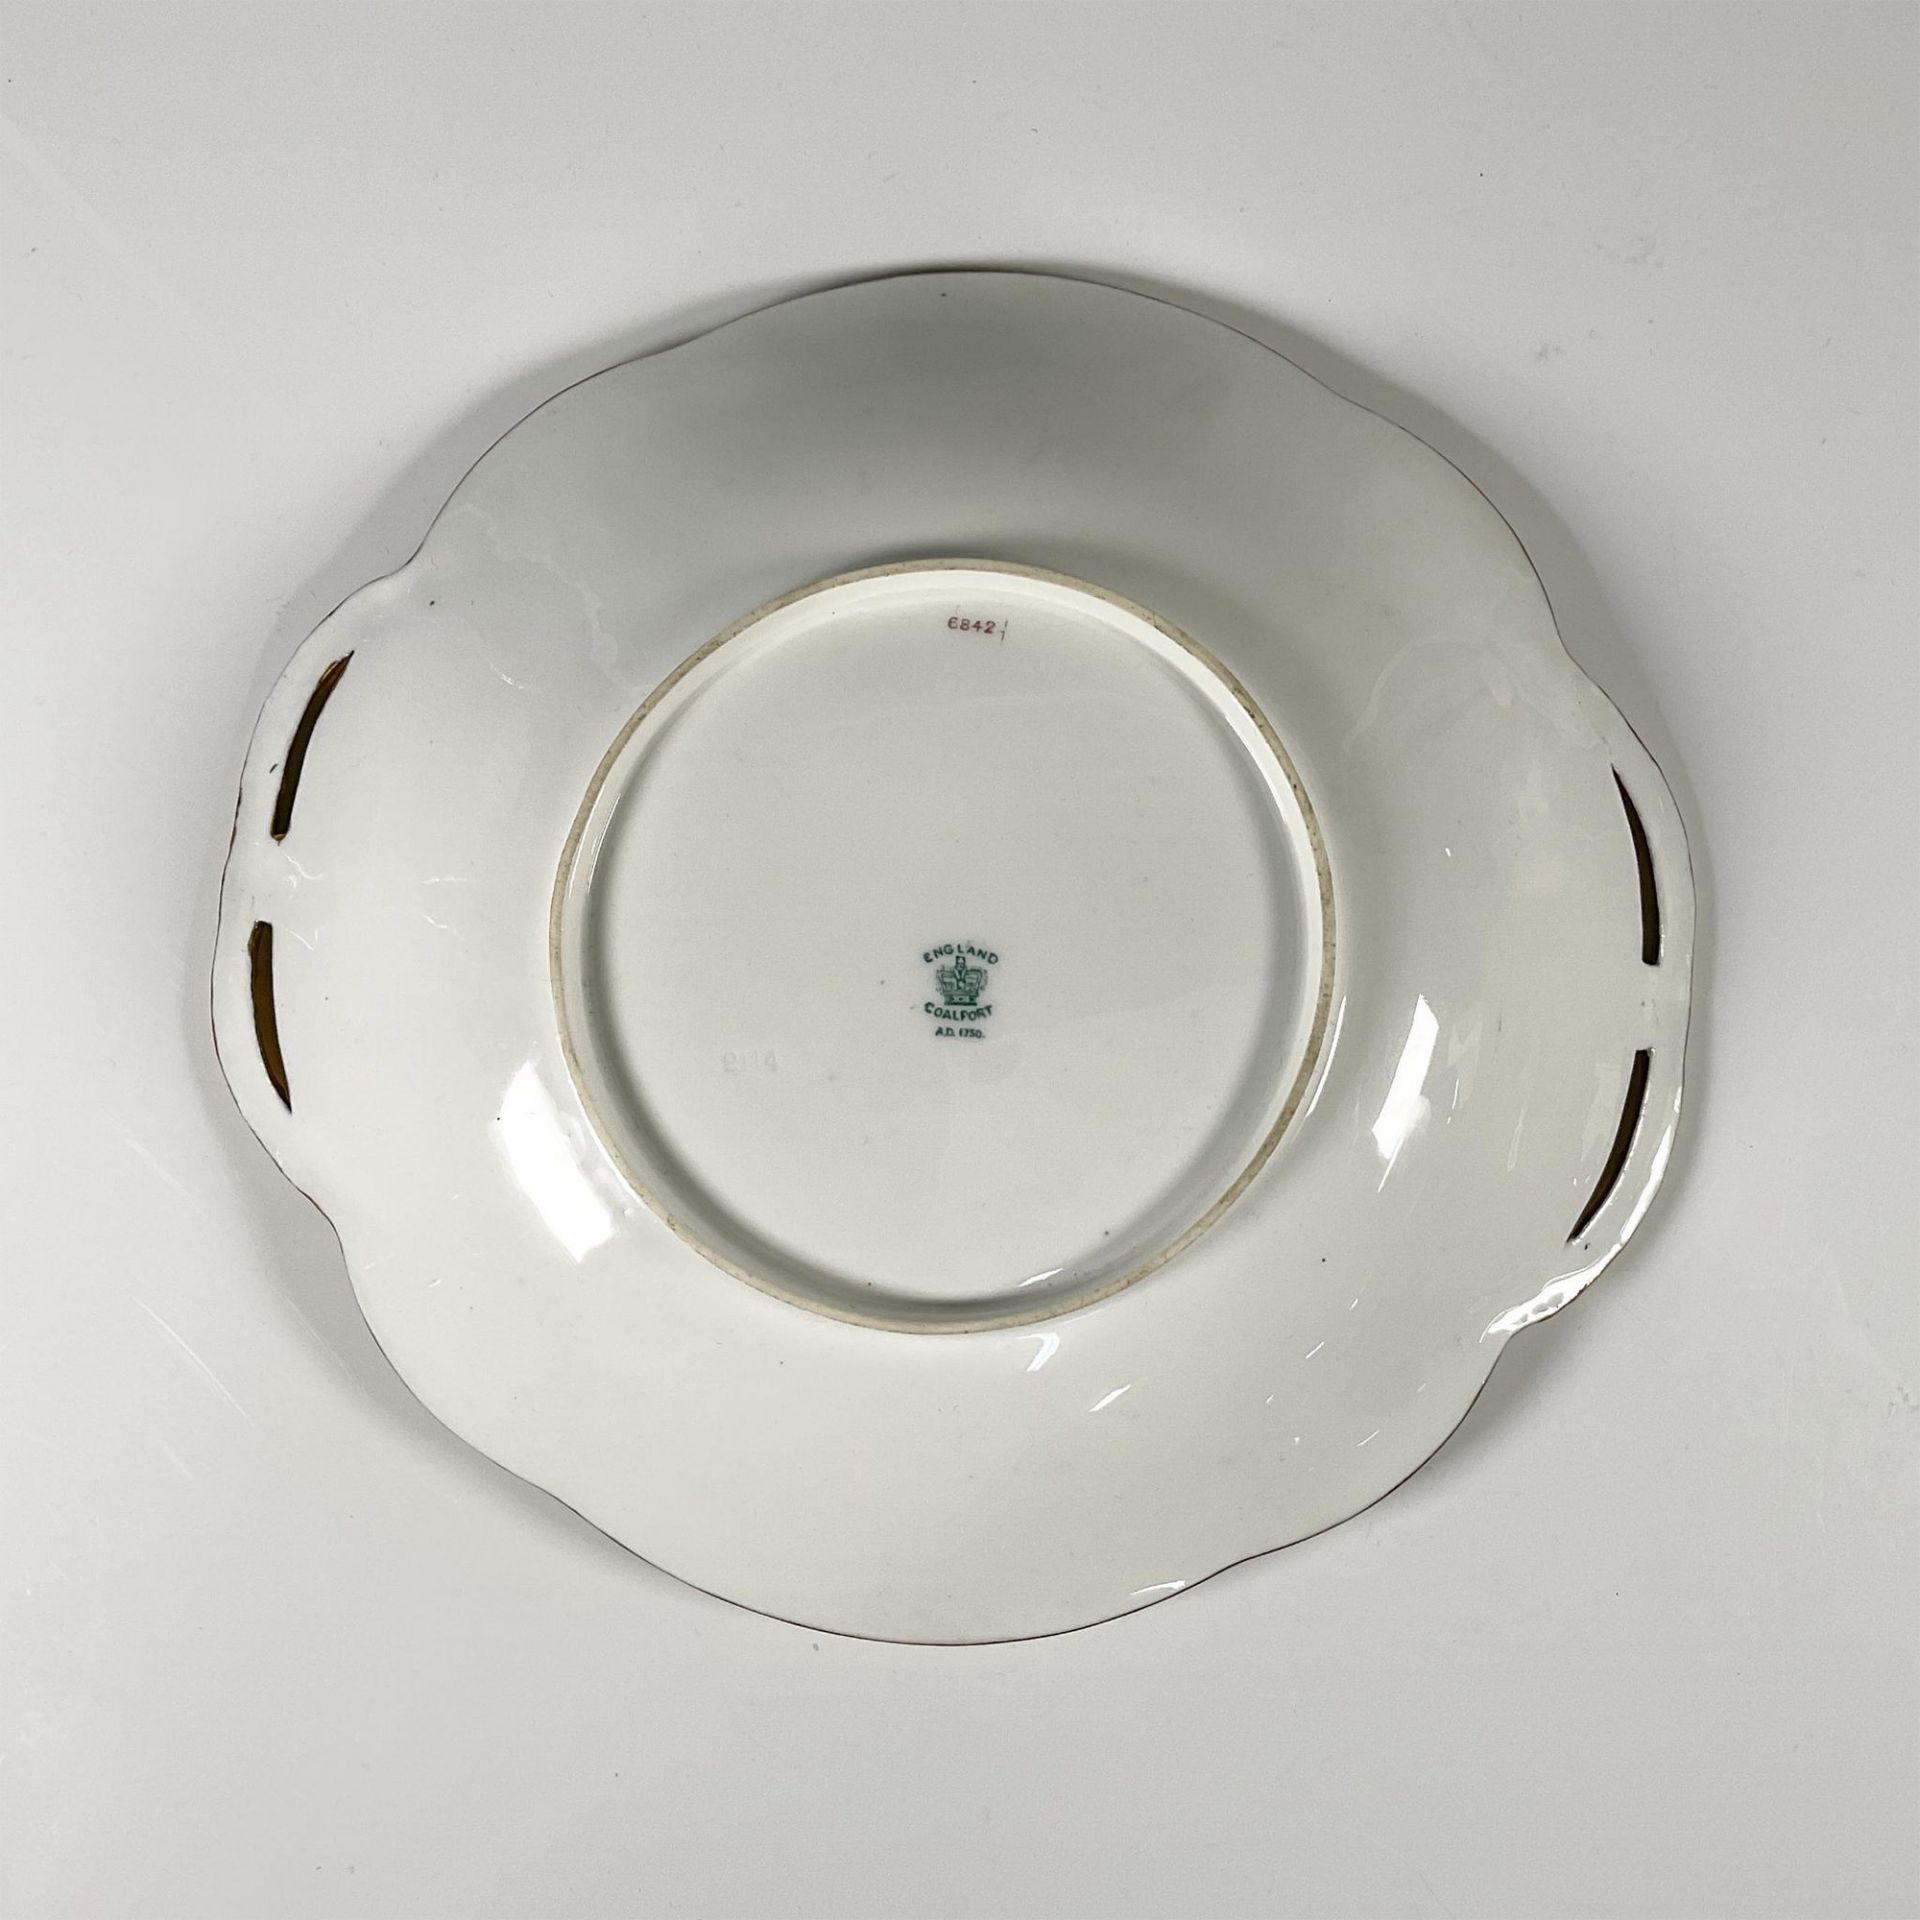 Coalport Porcelain Serving Platter - Image 3 of 3